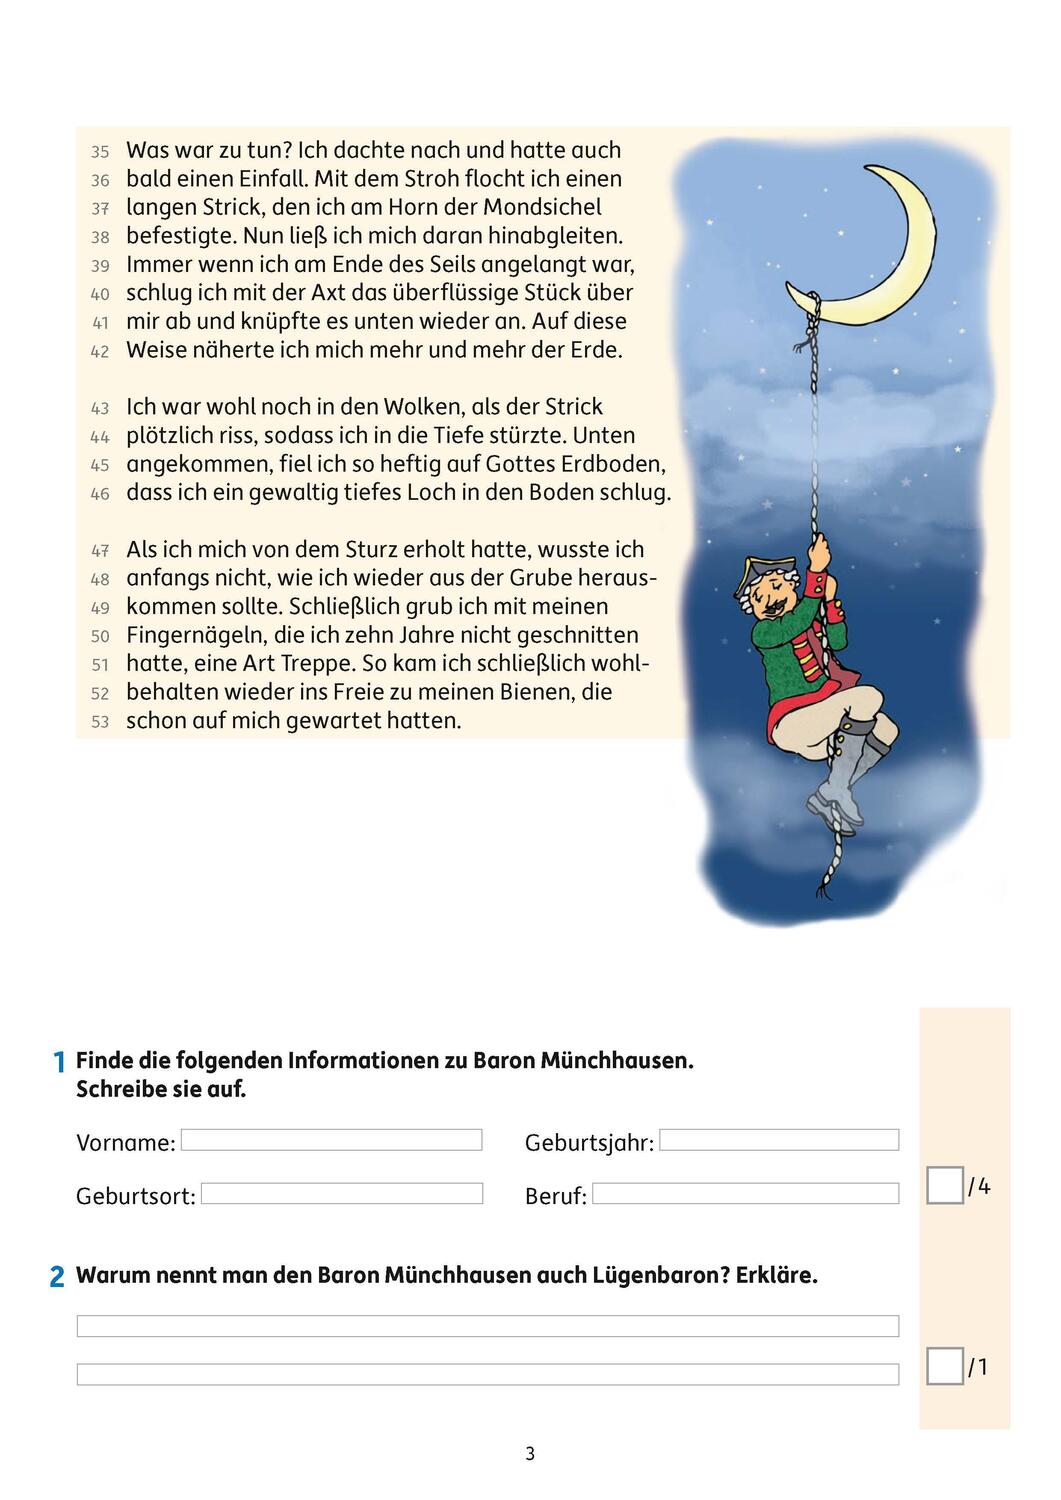 Bild: 9783881002936 | Lesetests in Deutsch - Lernzielkontrollen 3. Klasse, A4- Heft | 2019